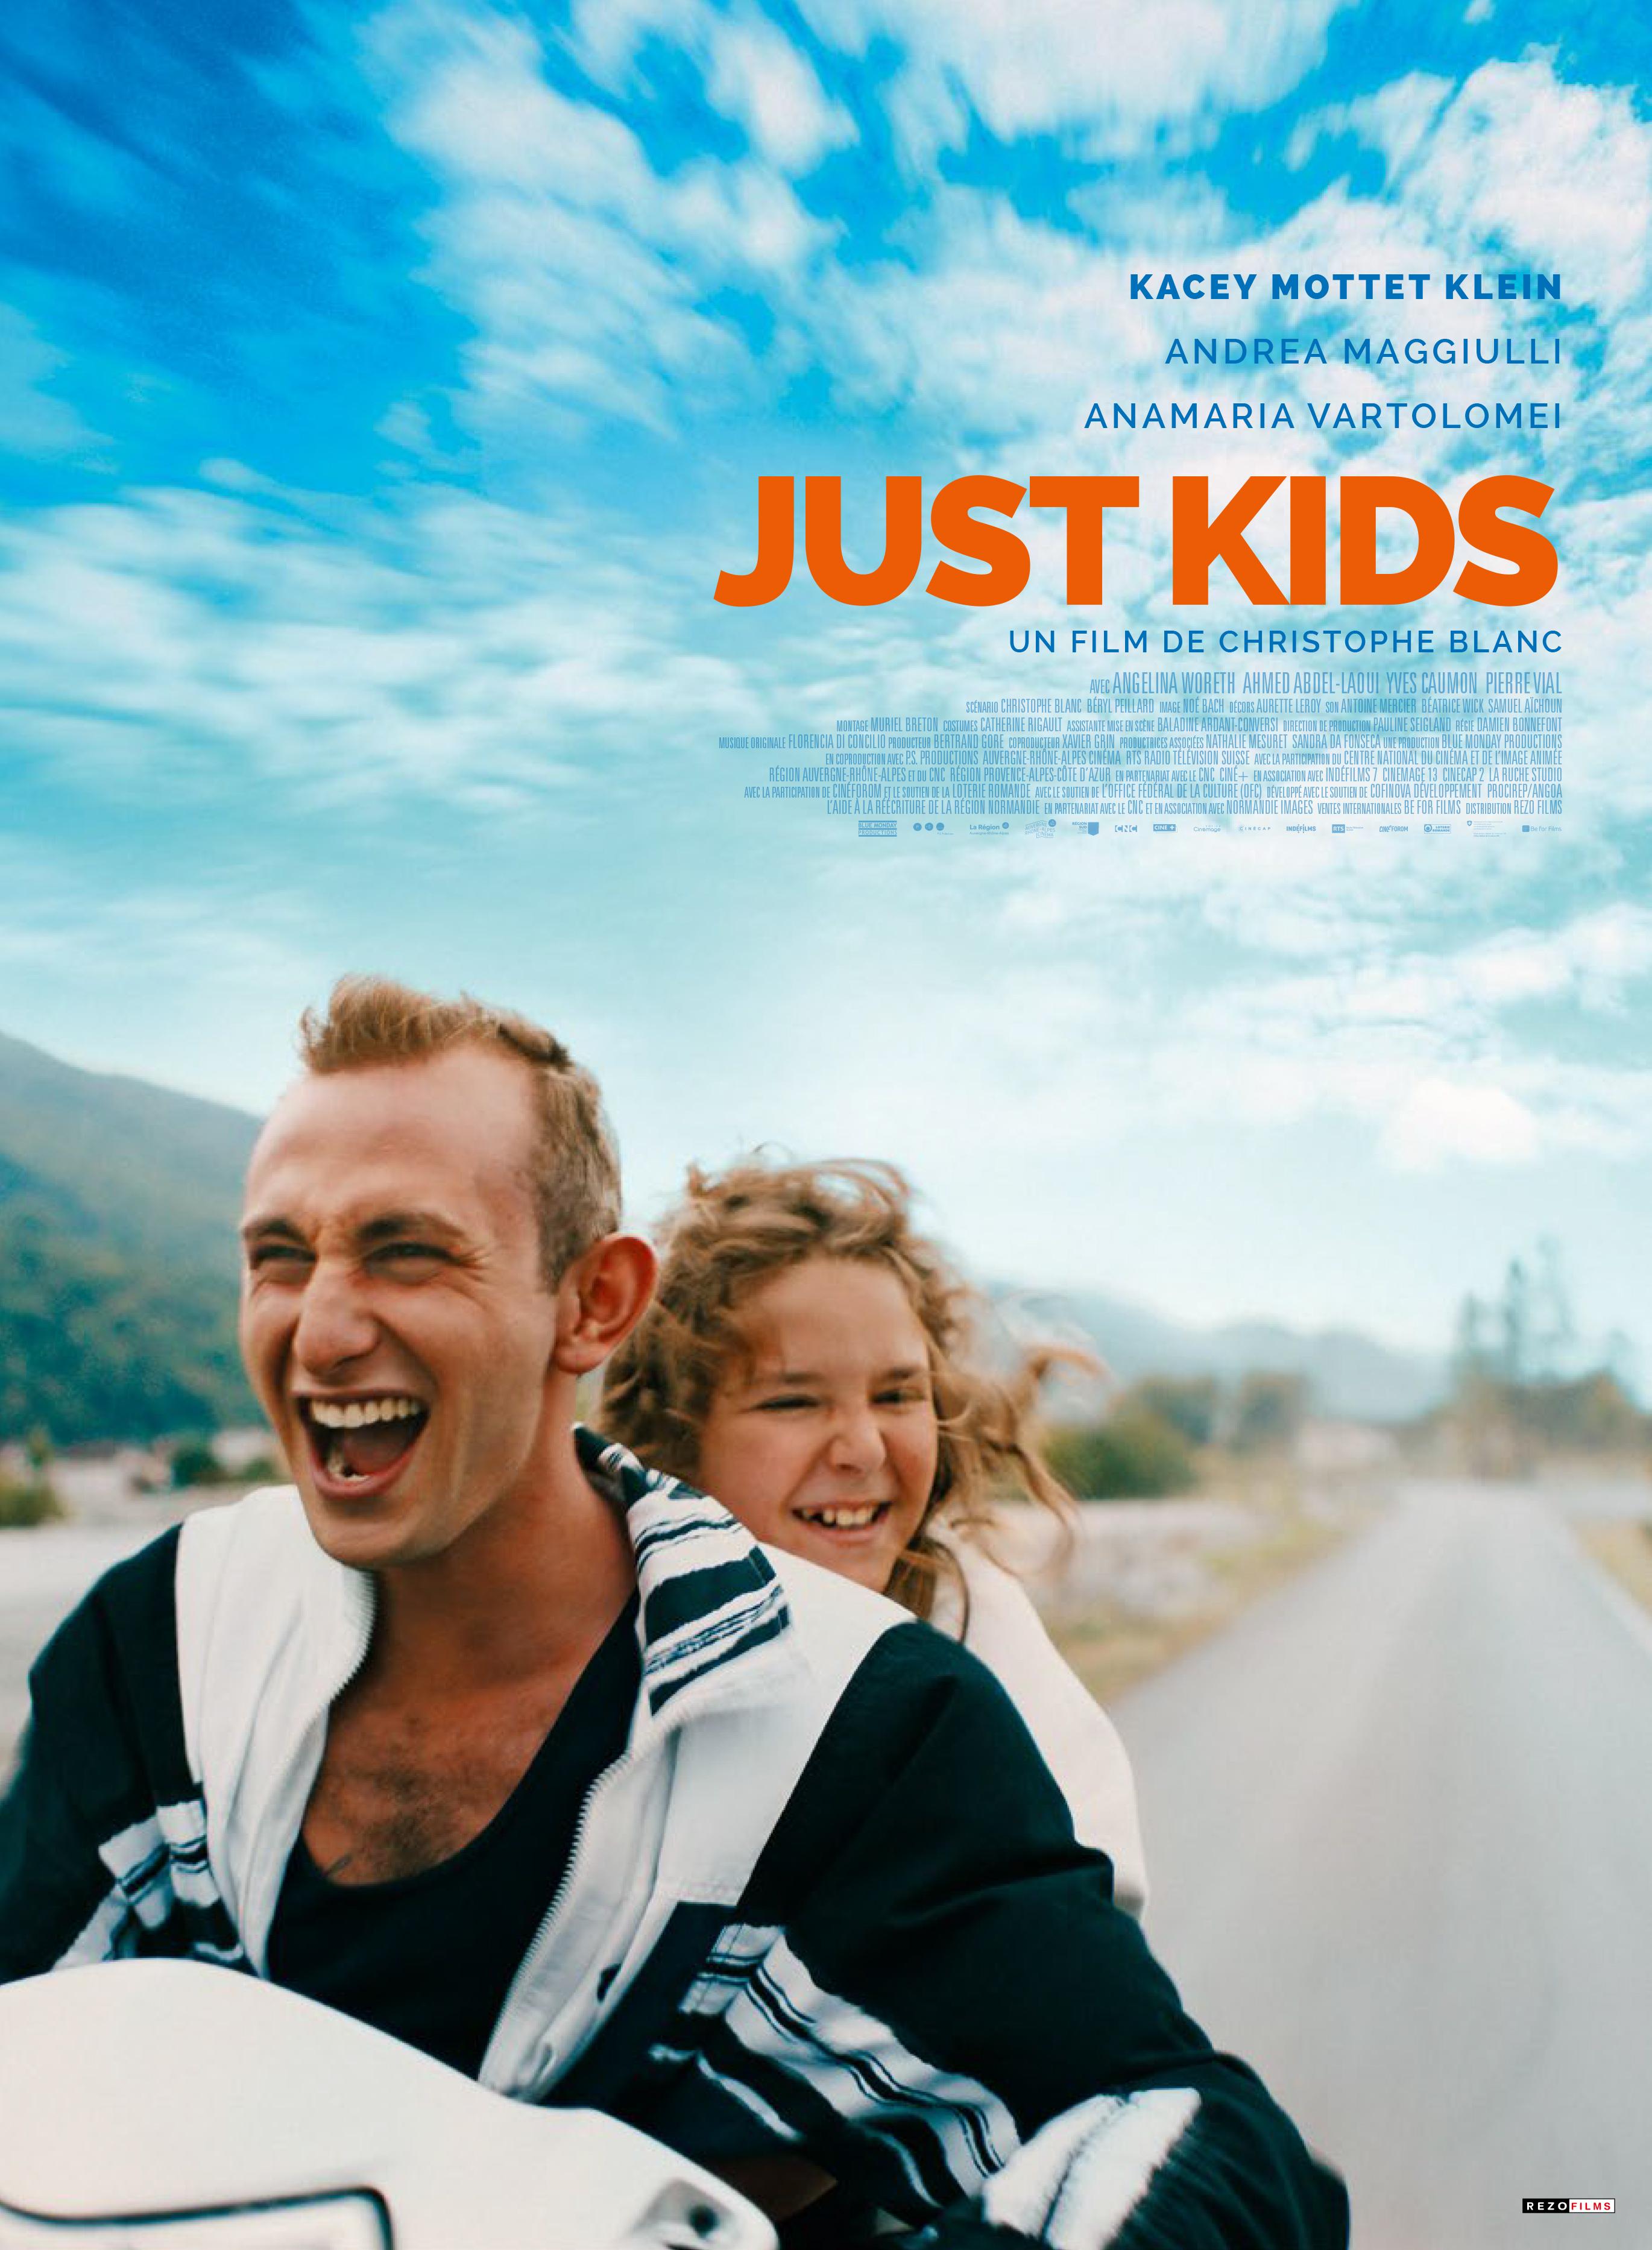 L'affiche de "Just Kids", un film de Christophe Blanc, avec Kacey Mottet Klein. [RTS - Blue Monday Productions, P.S. Productions Sàrl]